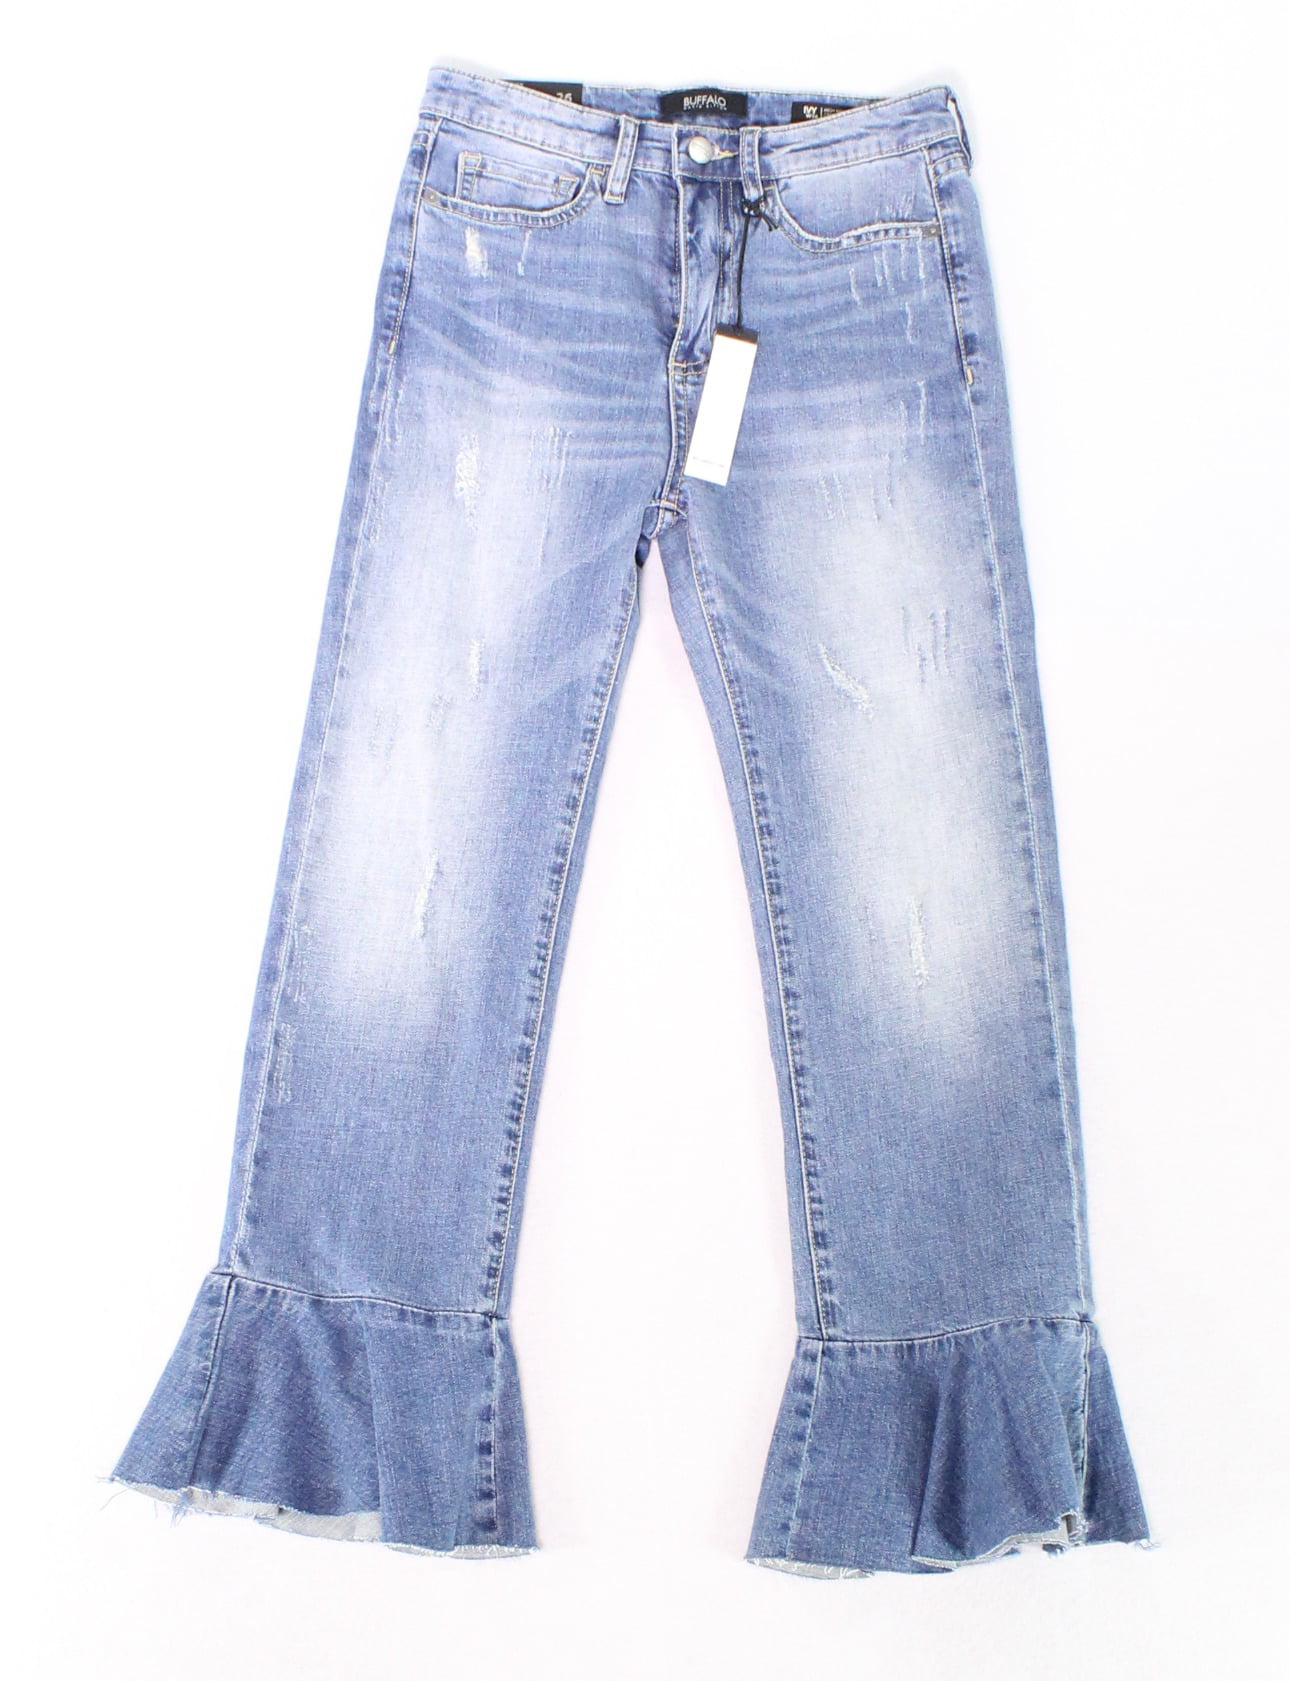 Buffalo Jeans - Women 26X25 Stretch Crop Flare Jeans 26 - Walmart.com ...